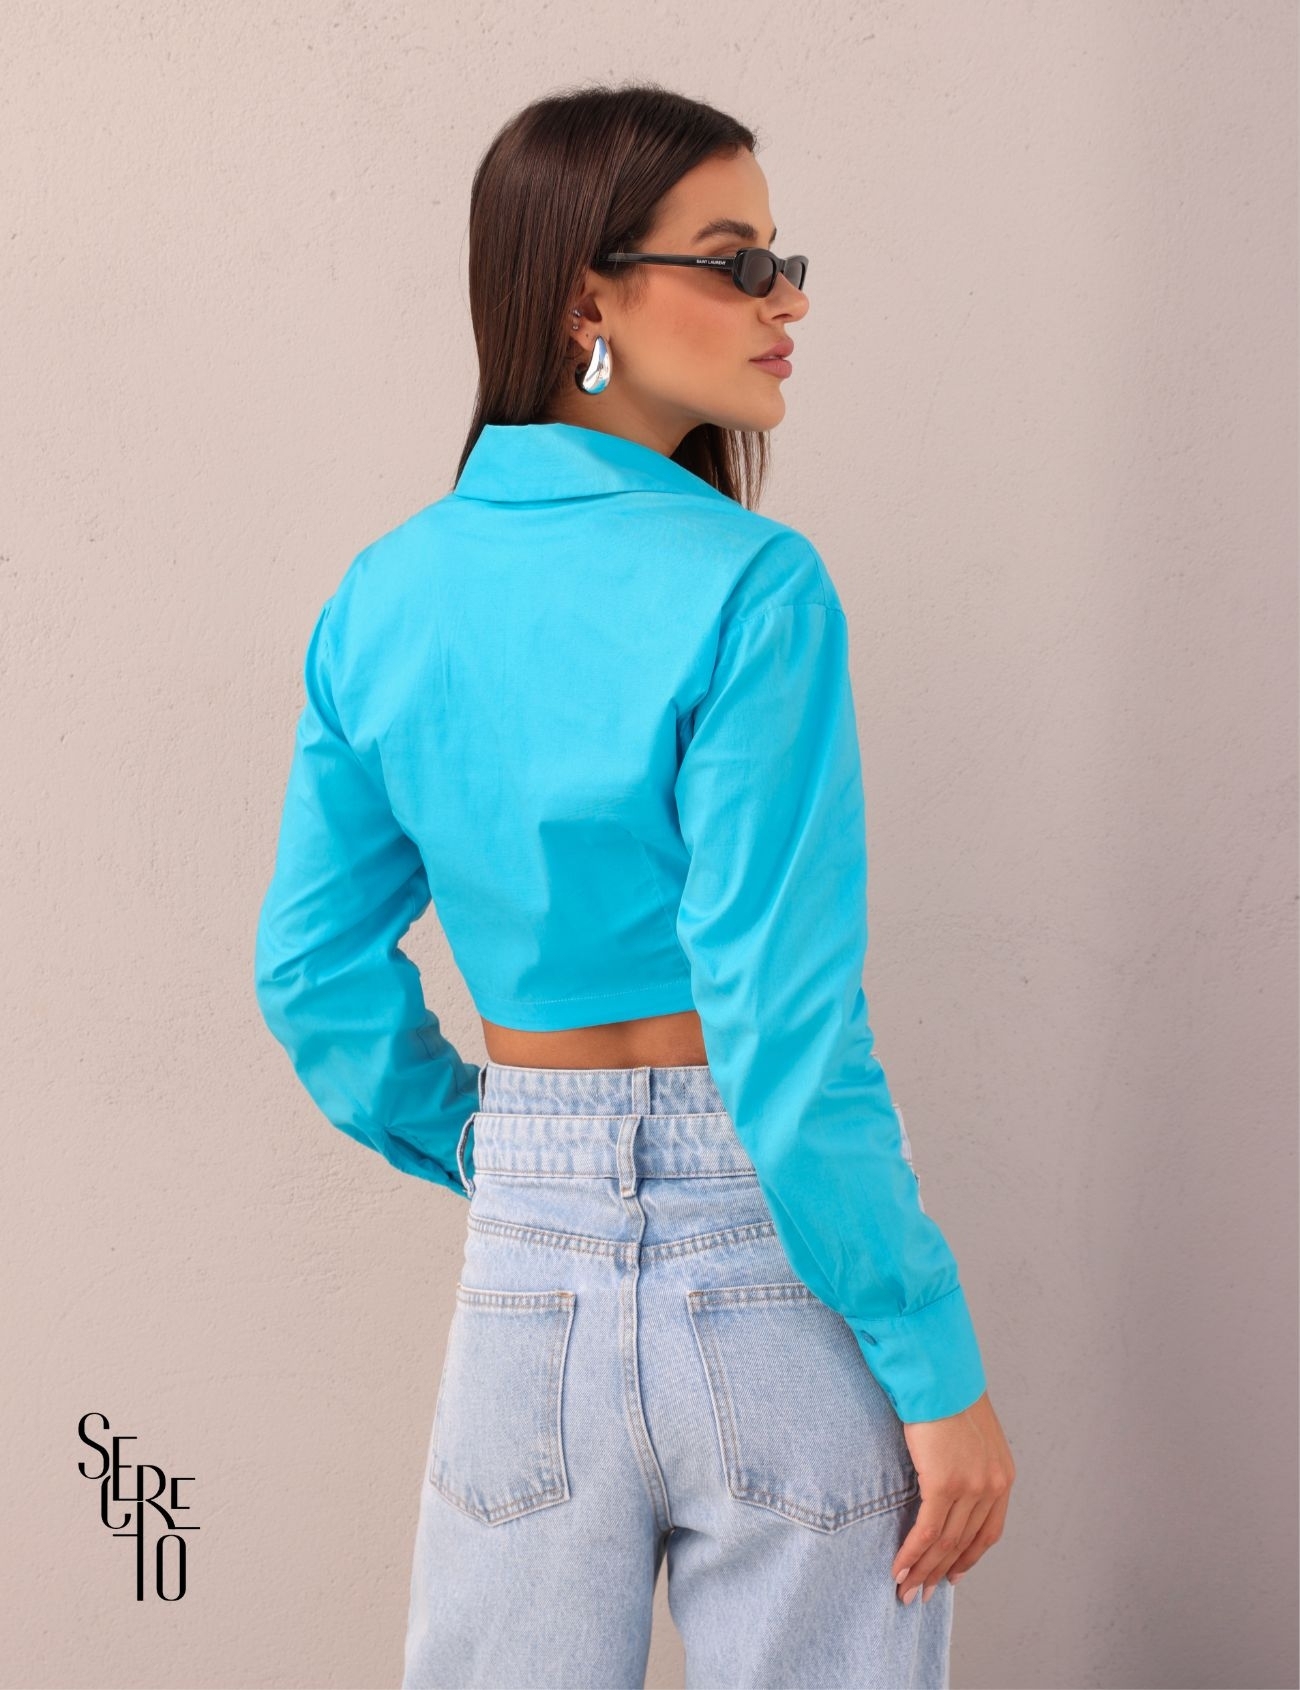 Camisa Nanda Azul e Calça Lia Jeans Claro